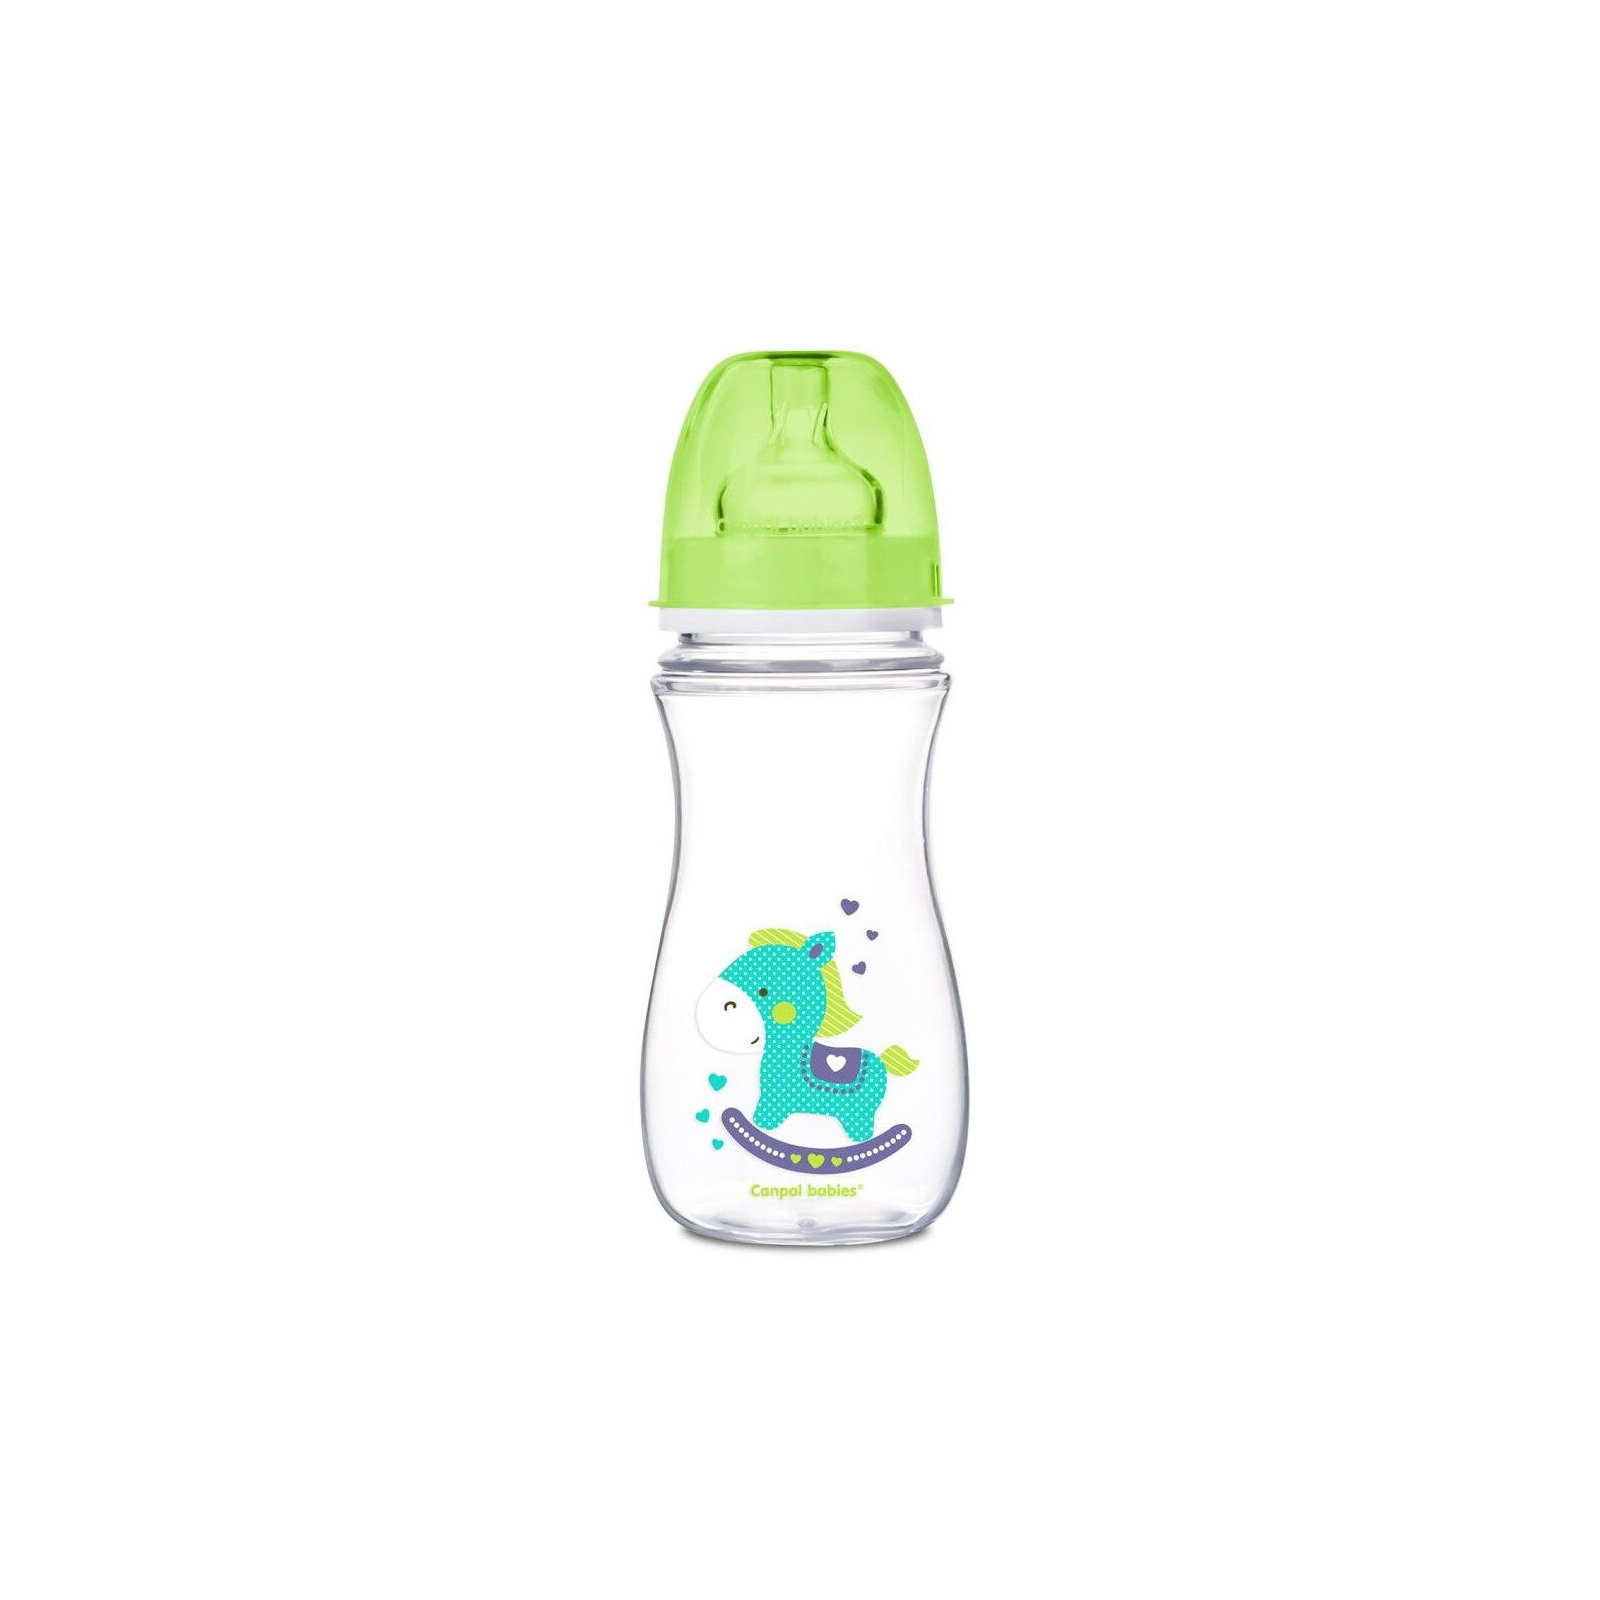 Бутылочка для кормления Canpol babies Easystart Цветные зверьки 240 мл Бирюзовая (35/206)